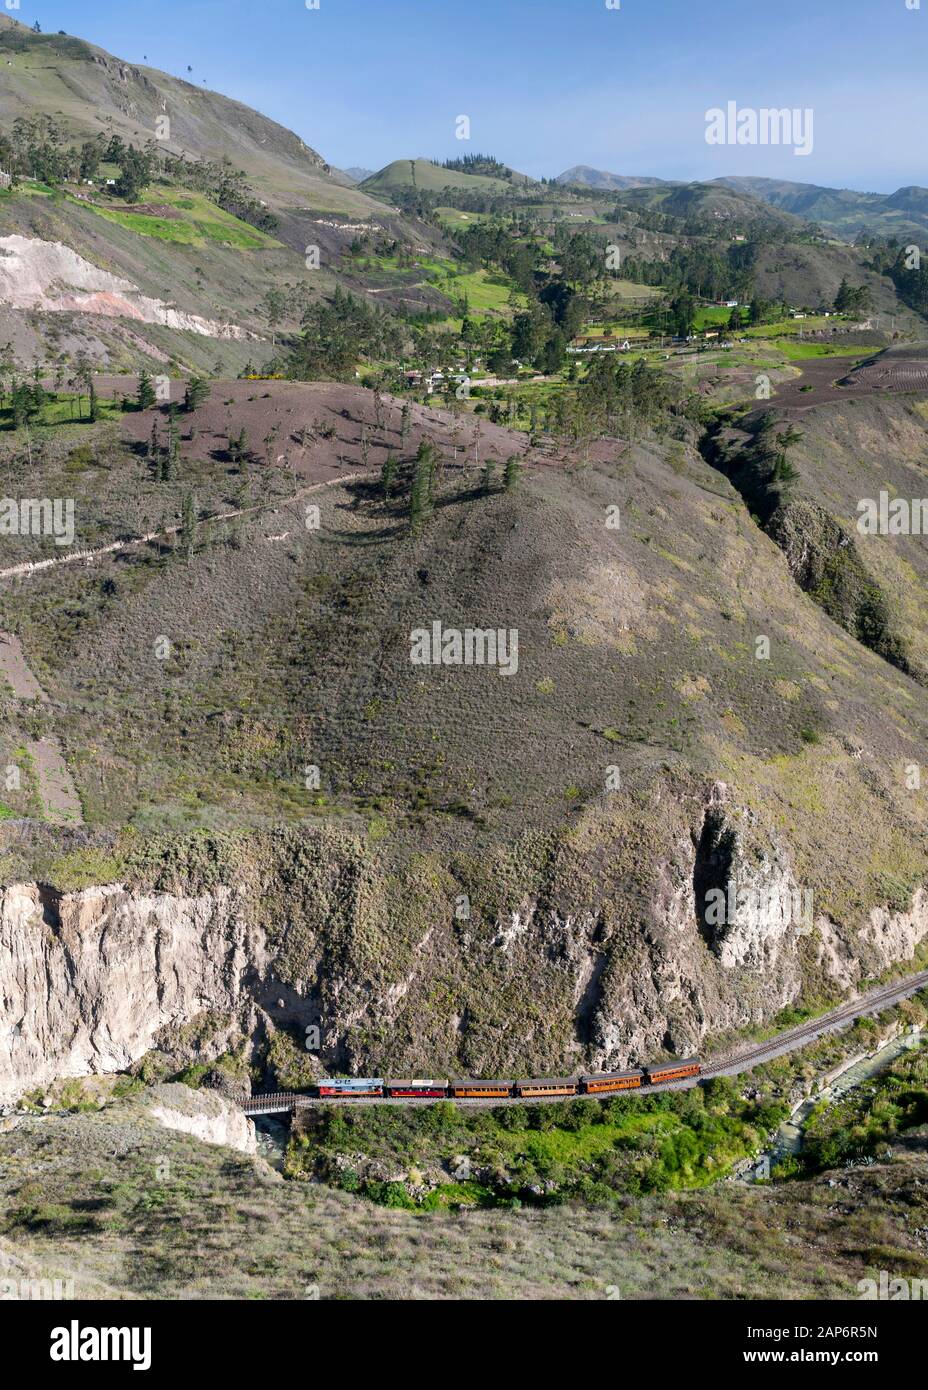 Le train touristique entre la ville d'Alausi et le nez du diable dans la montagne de l'Equateur. Banque D'Images